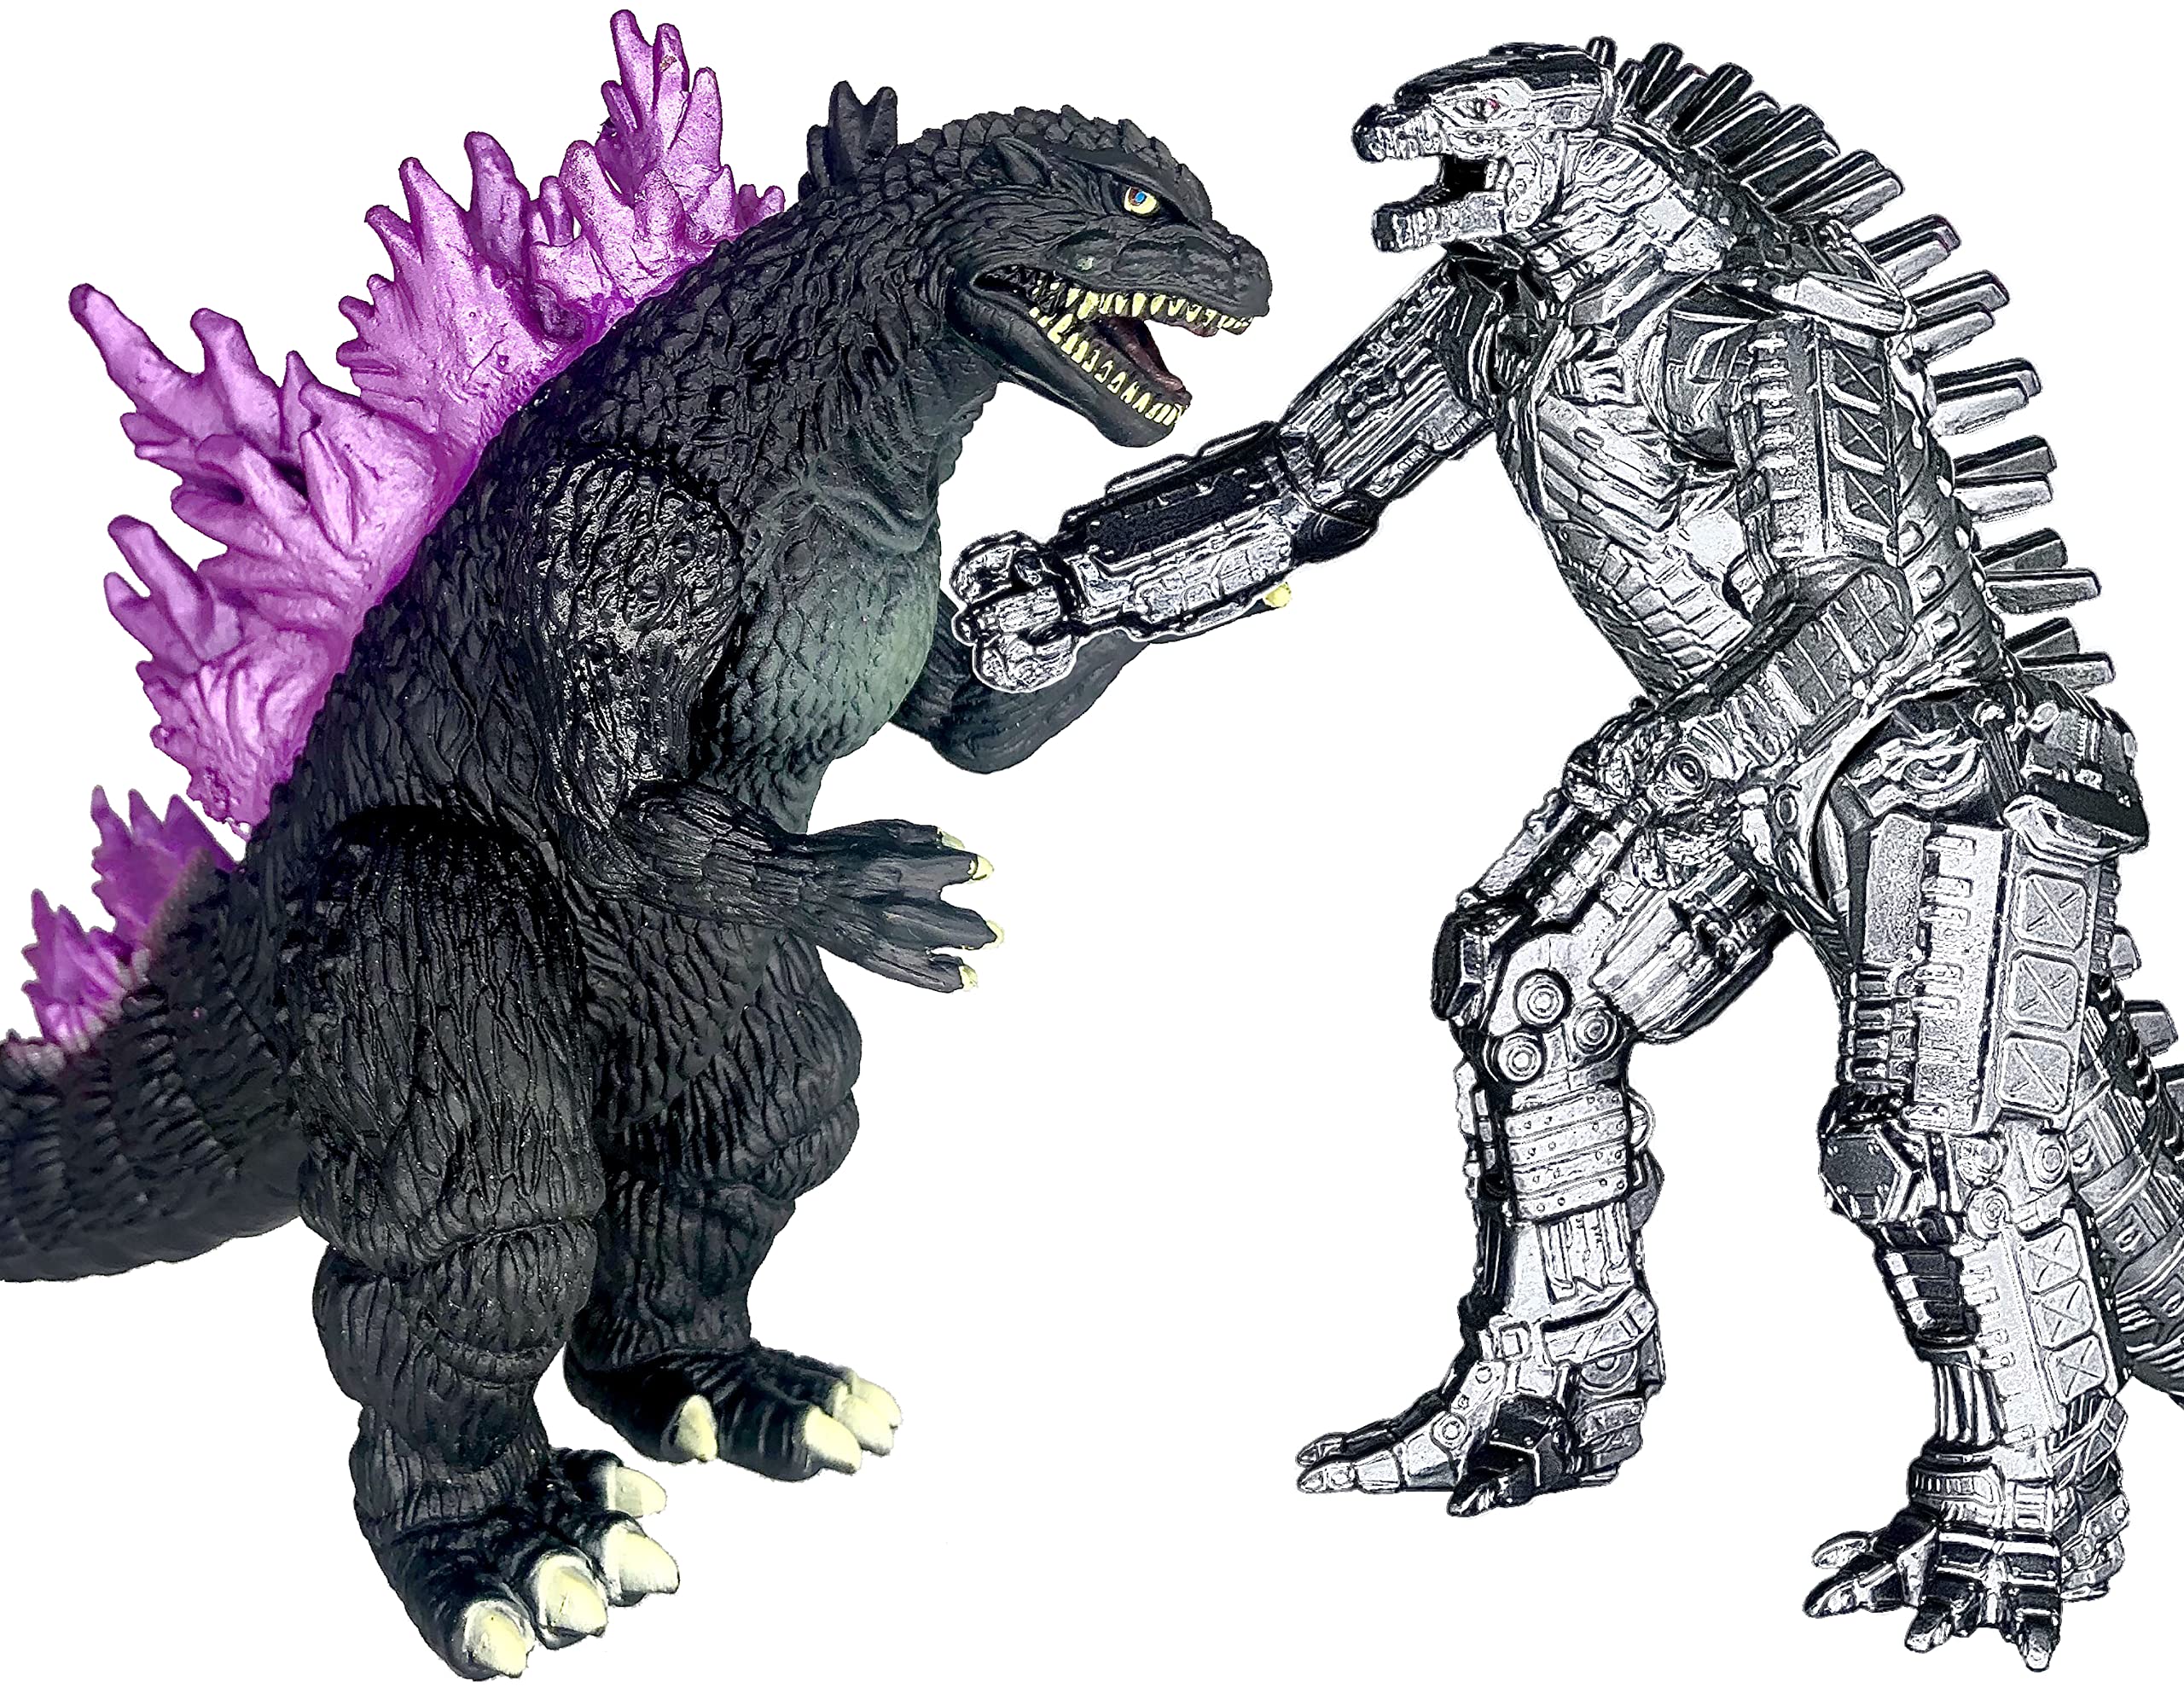 Mô hình Godzilla: Hãy cùng chiêm ngưỡng một trong những mô hình Godzilla đẹp nhất từng được chế tạo. Với độ tỉ mỉ và chân thực, bộ sưu tập đầy ấn tượng này chắc chắn sẽ làm hài lòng bất kỳ fan hâm mộ nào của loài quái vật huyền thoại này.